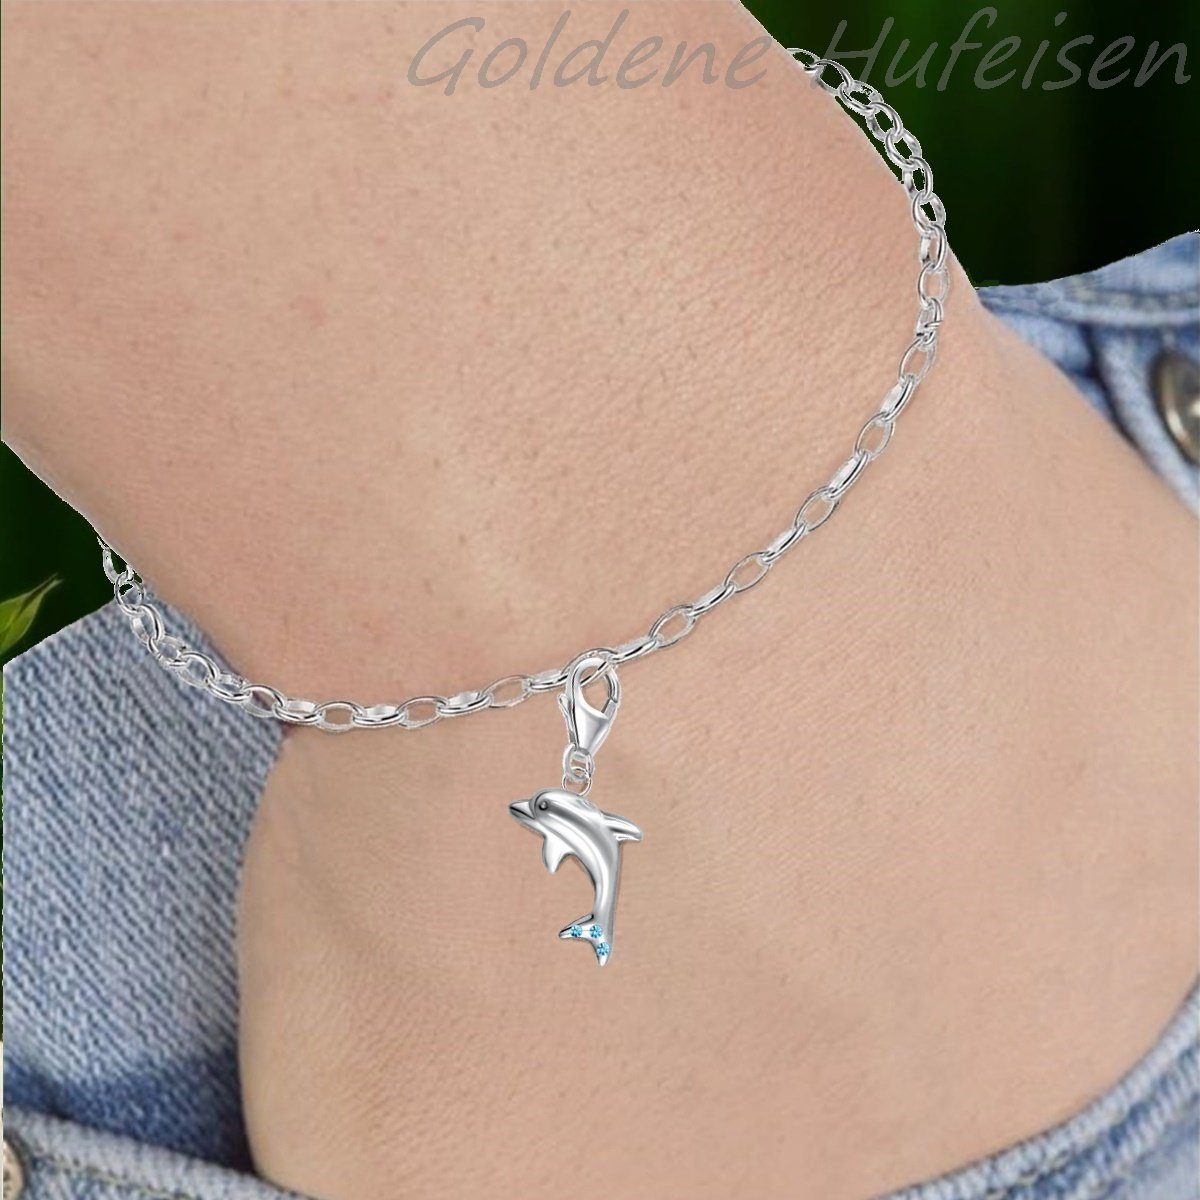 Goldene Hufeisen Bettelarmband für 925 Charm Zirkonia Etui), Kristall Silber Halskette für Delfin Stück, oder inkl. Charm (1 Gliederarmband Einhänger